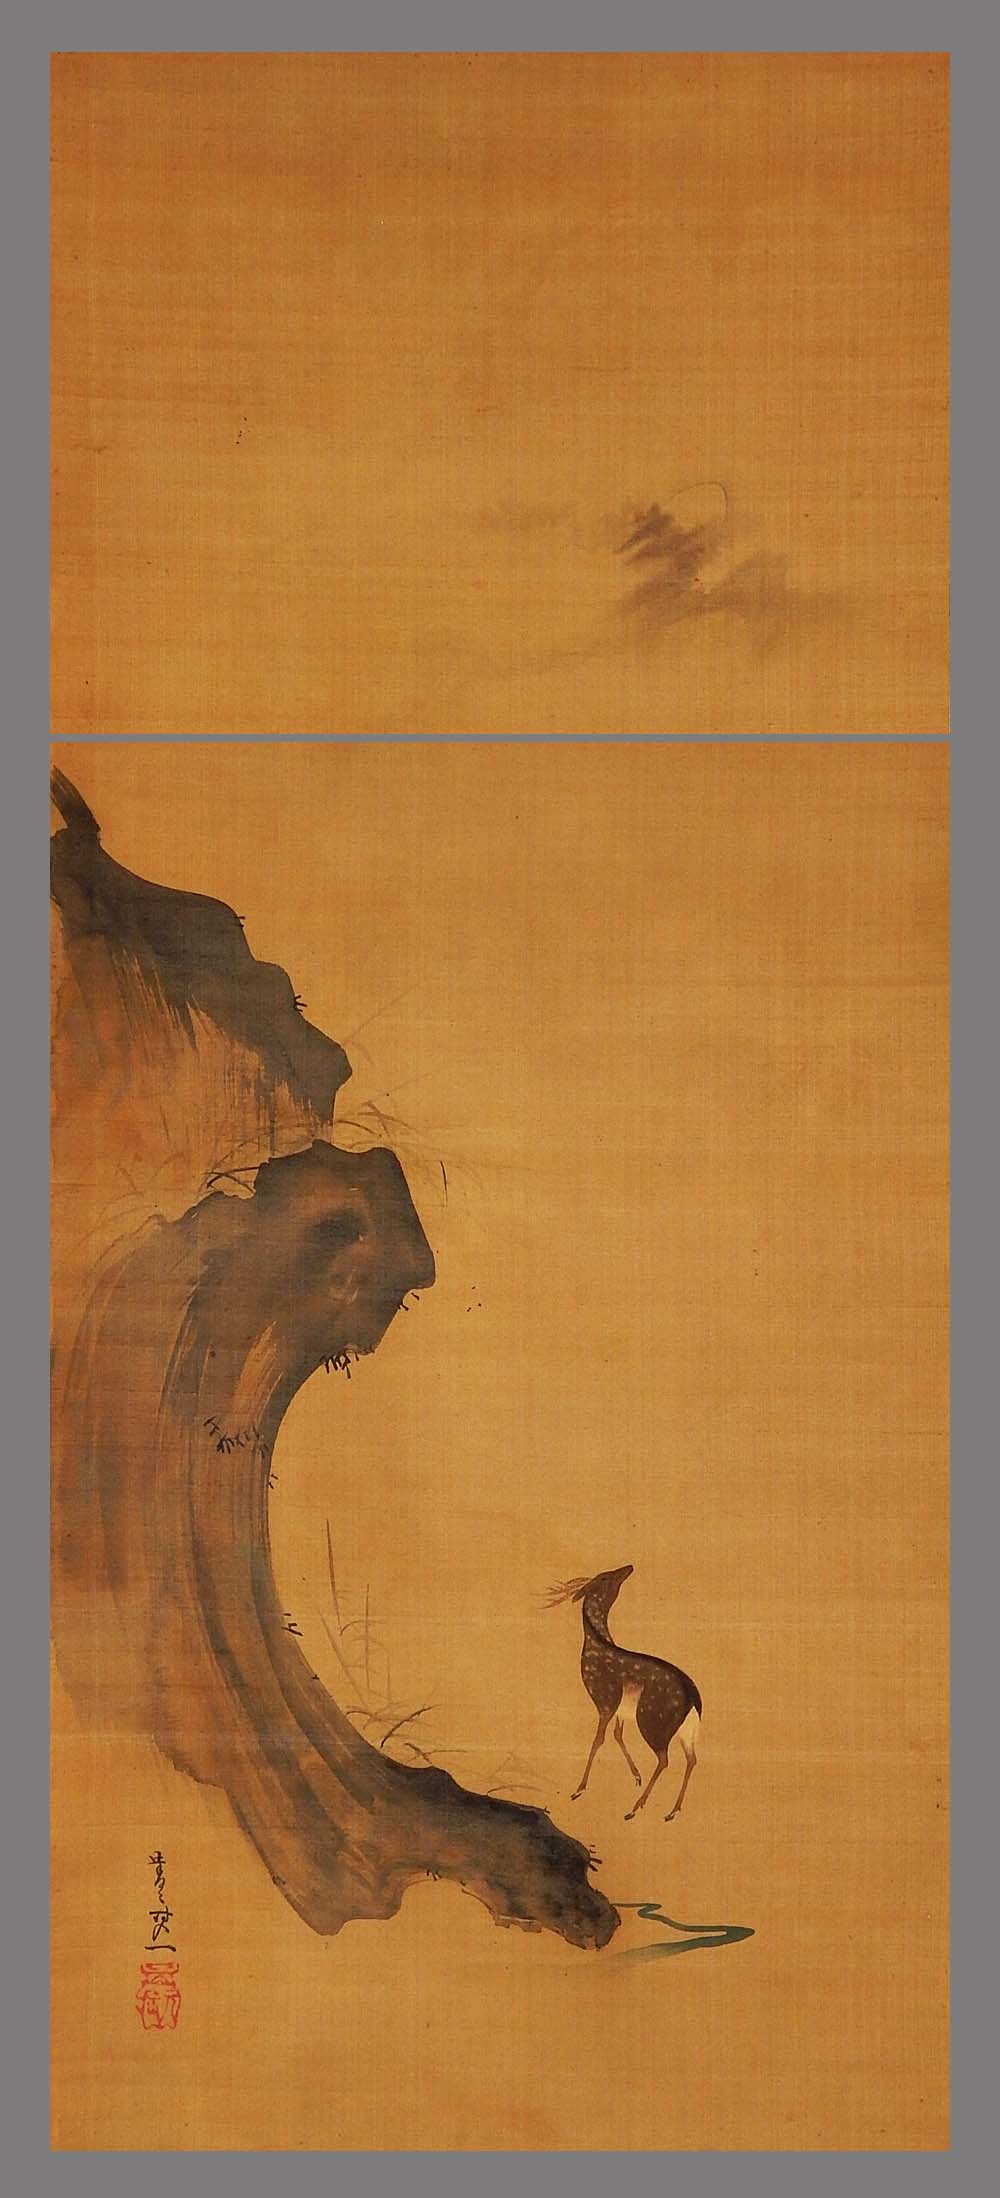 新色入荷■青々其一■月下鹿之図■近代日本画の先駆的な絵師■肉筆■掛軸■掛け軸■日本画■ 花鳥、鳥獣